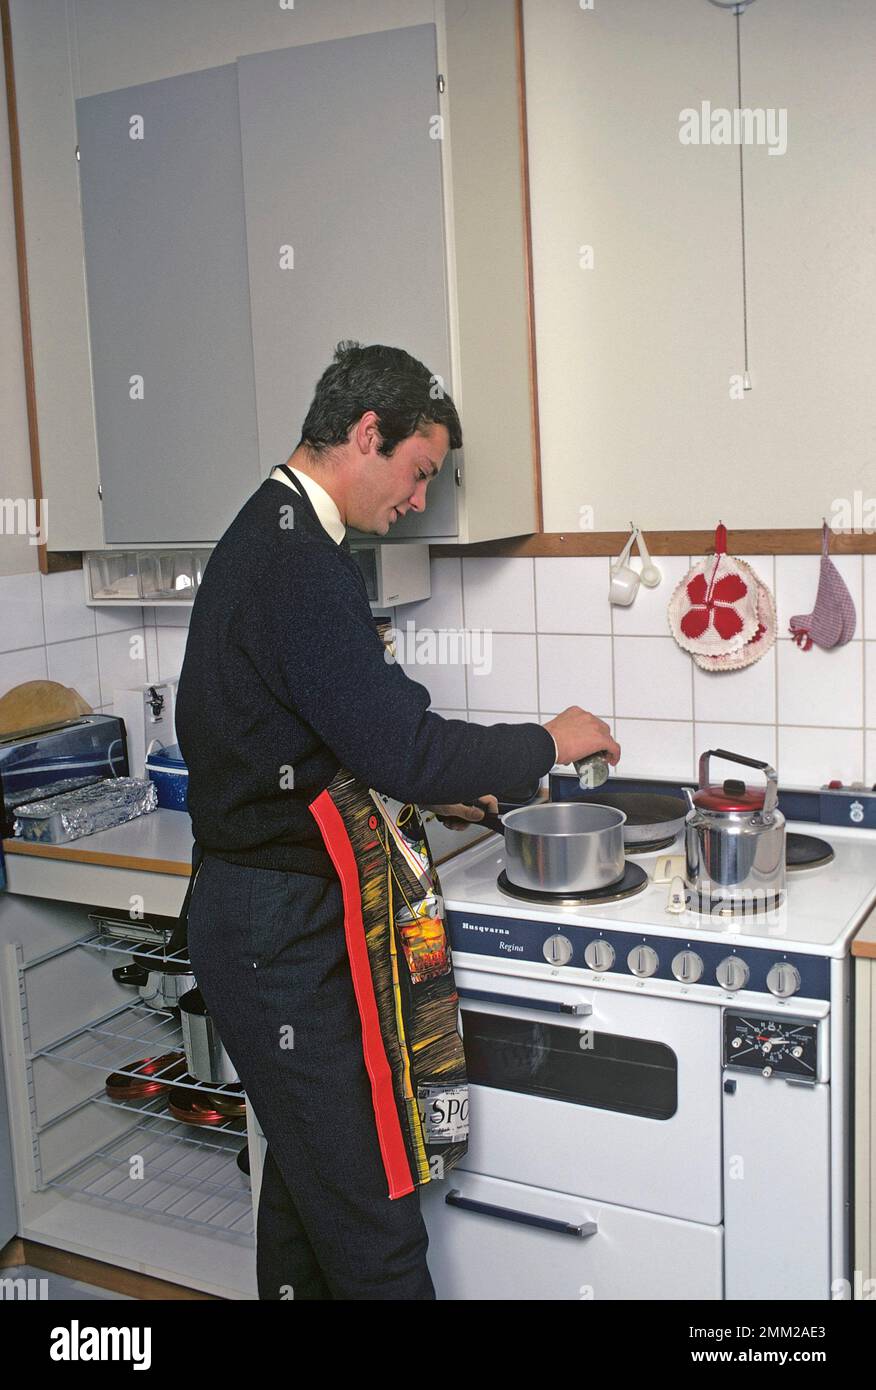 Carl XVI Gustaf, König von Schweden. Geboren am 30. april 1946. Als Kronprinz in seiner Studentenwohnung und Küche, während er in Uppsala studiert. Er steht neben dem Küchenherd und trägt eine Schürze und gibt vor, etwas zu kochen, aber es gibt kein Essen im Kochtopf. 1968 Stockfoto